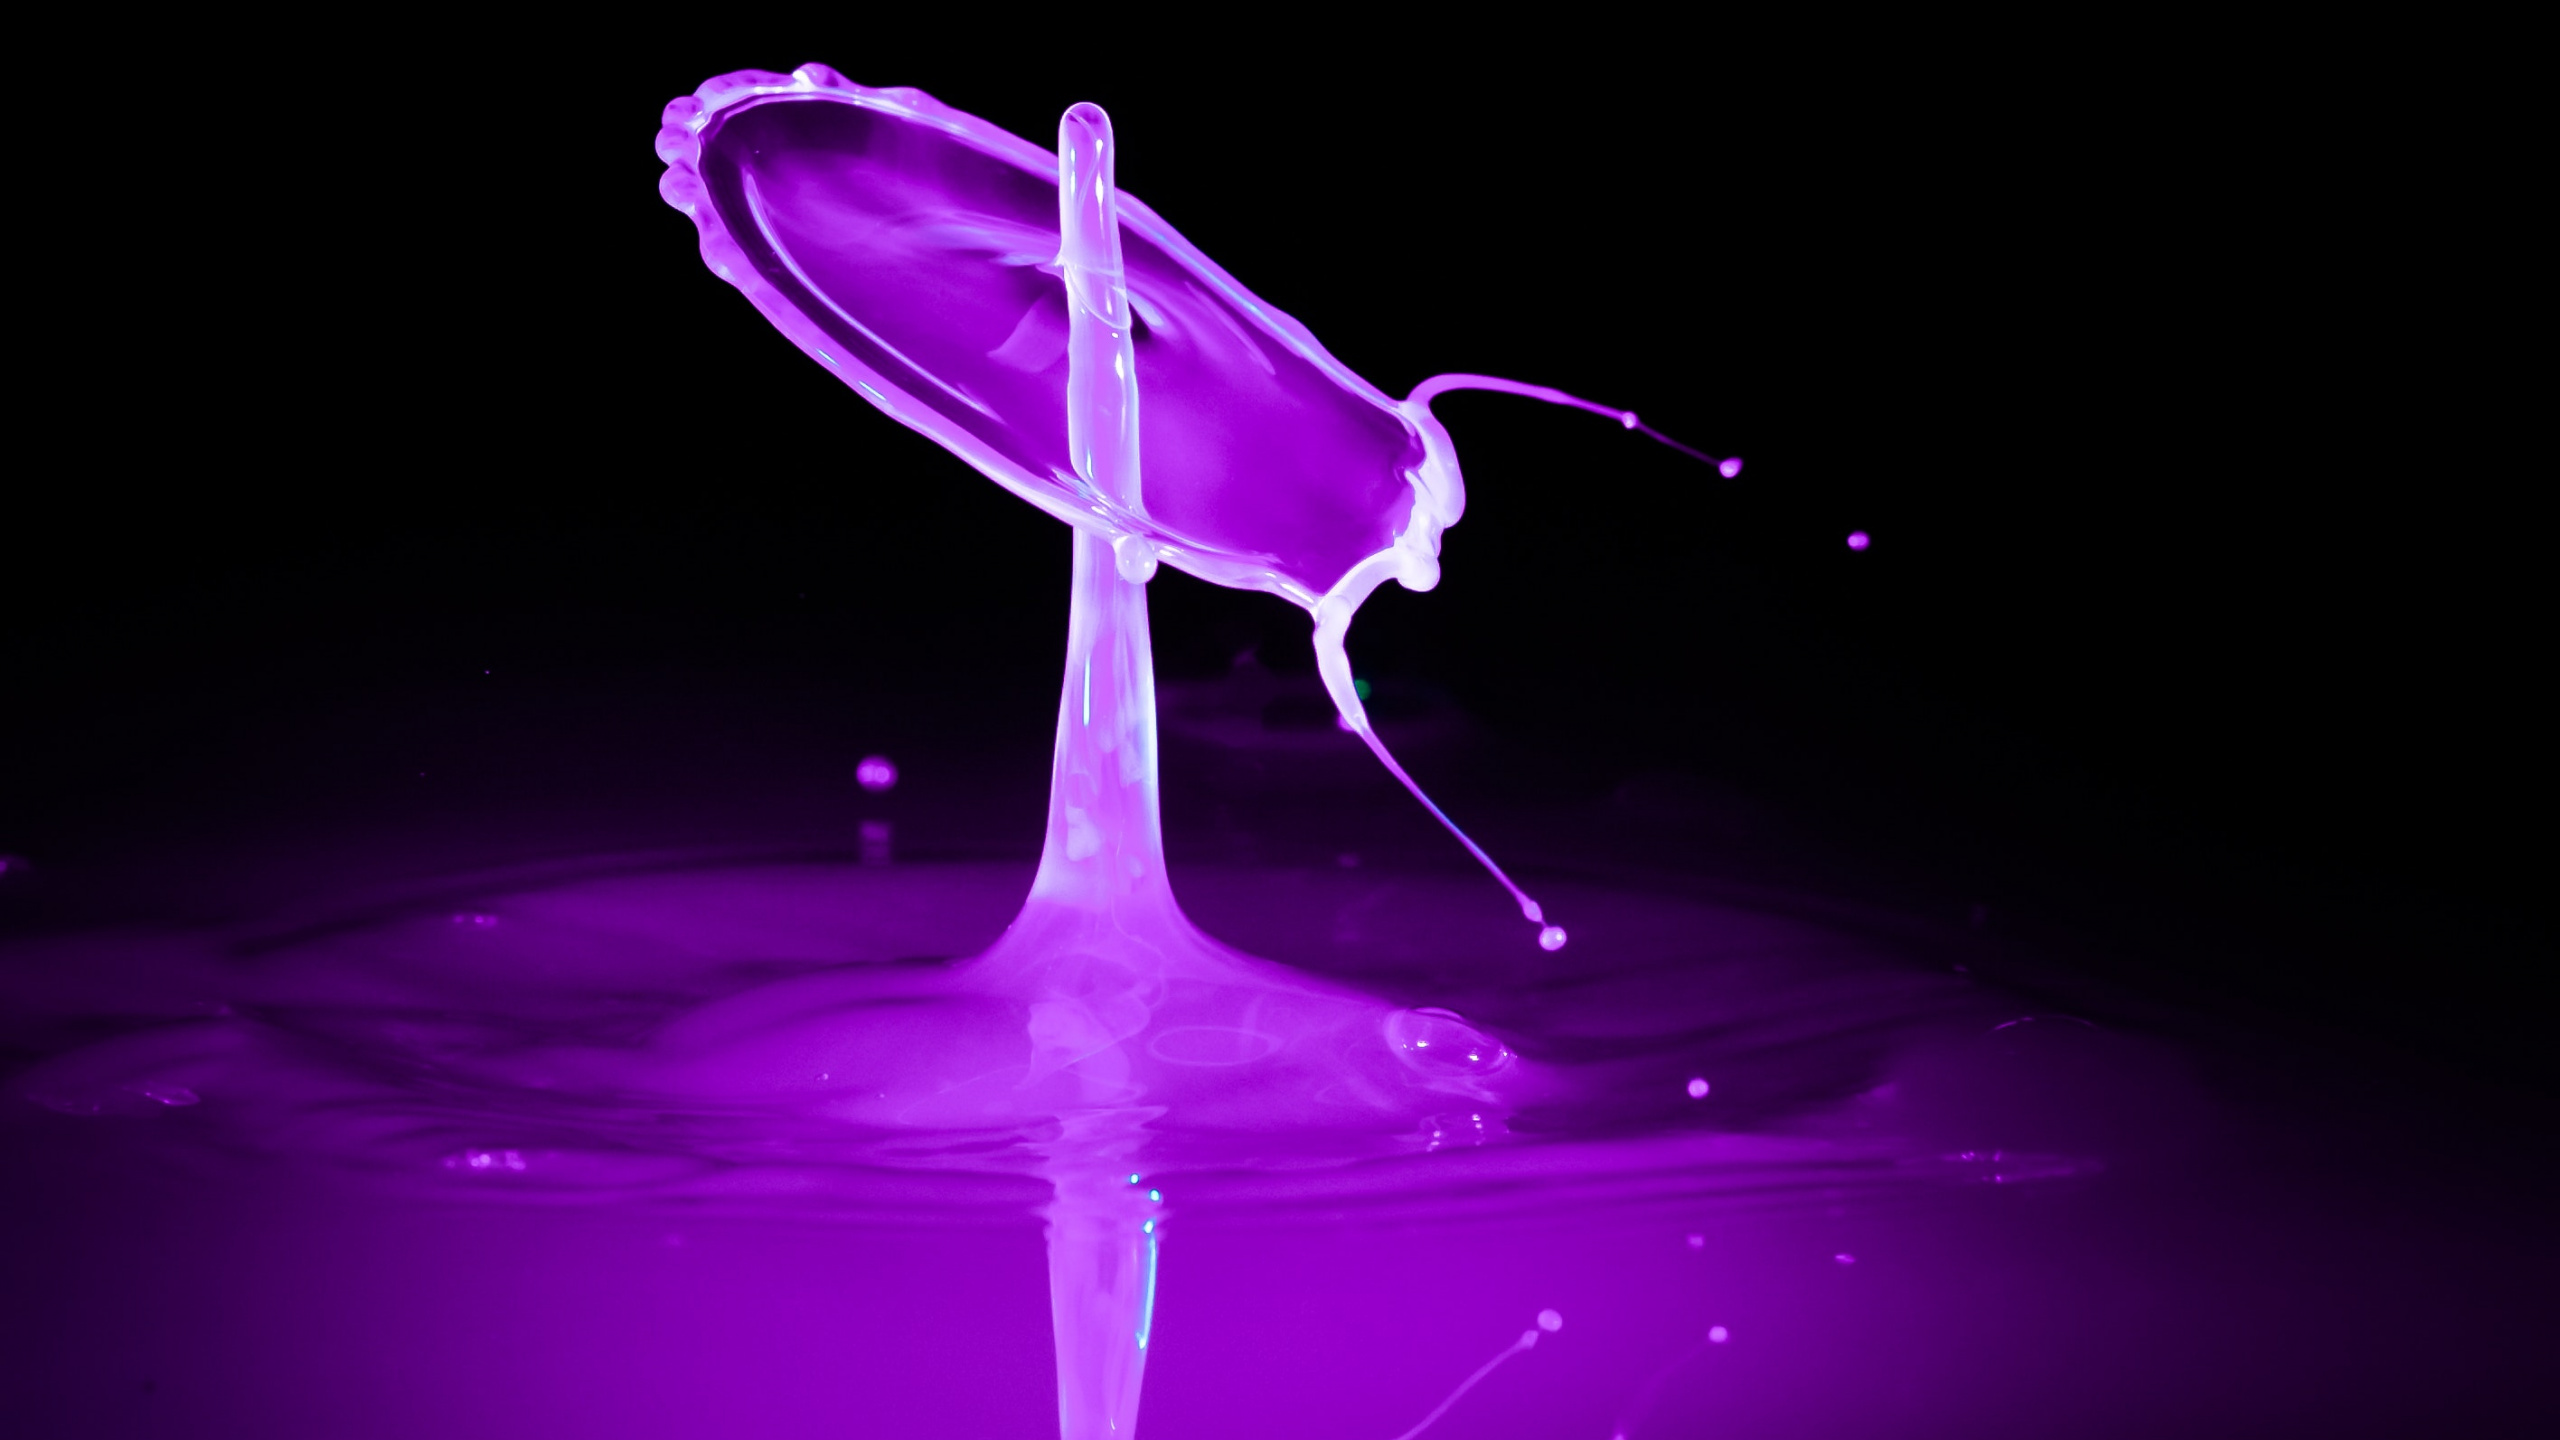 运动的图形, 紫色的, 紫罗兰色, 液体, 流体 壁纸 2560x1440 允许